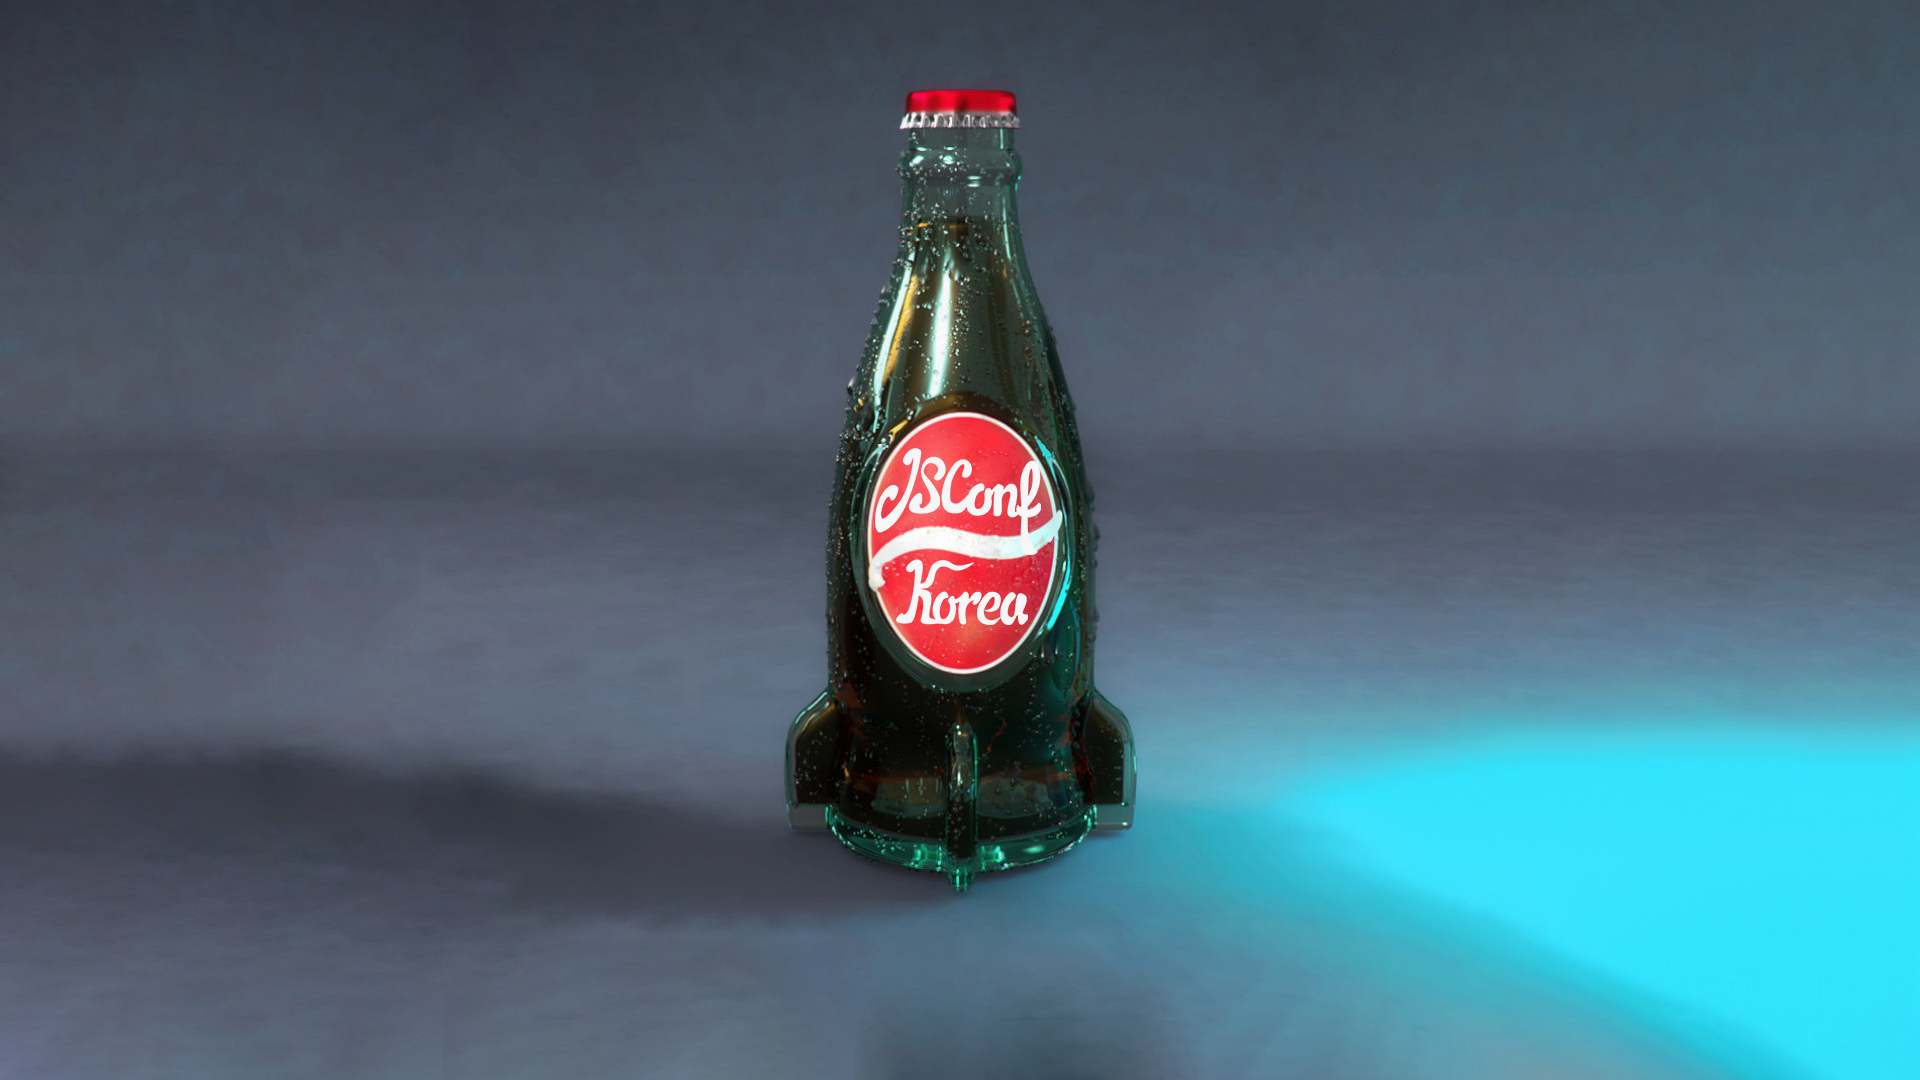 JSConf Korea branded Nuka Cola bottle